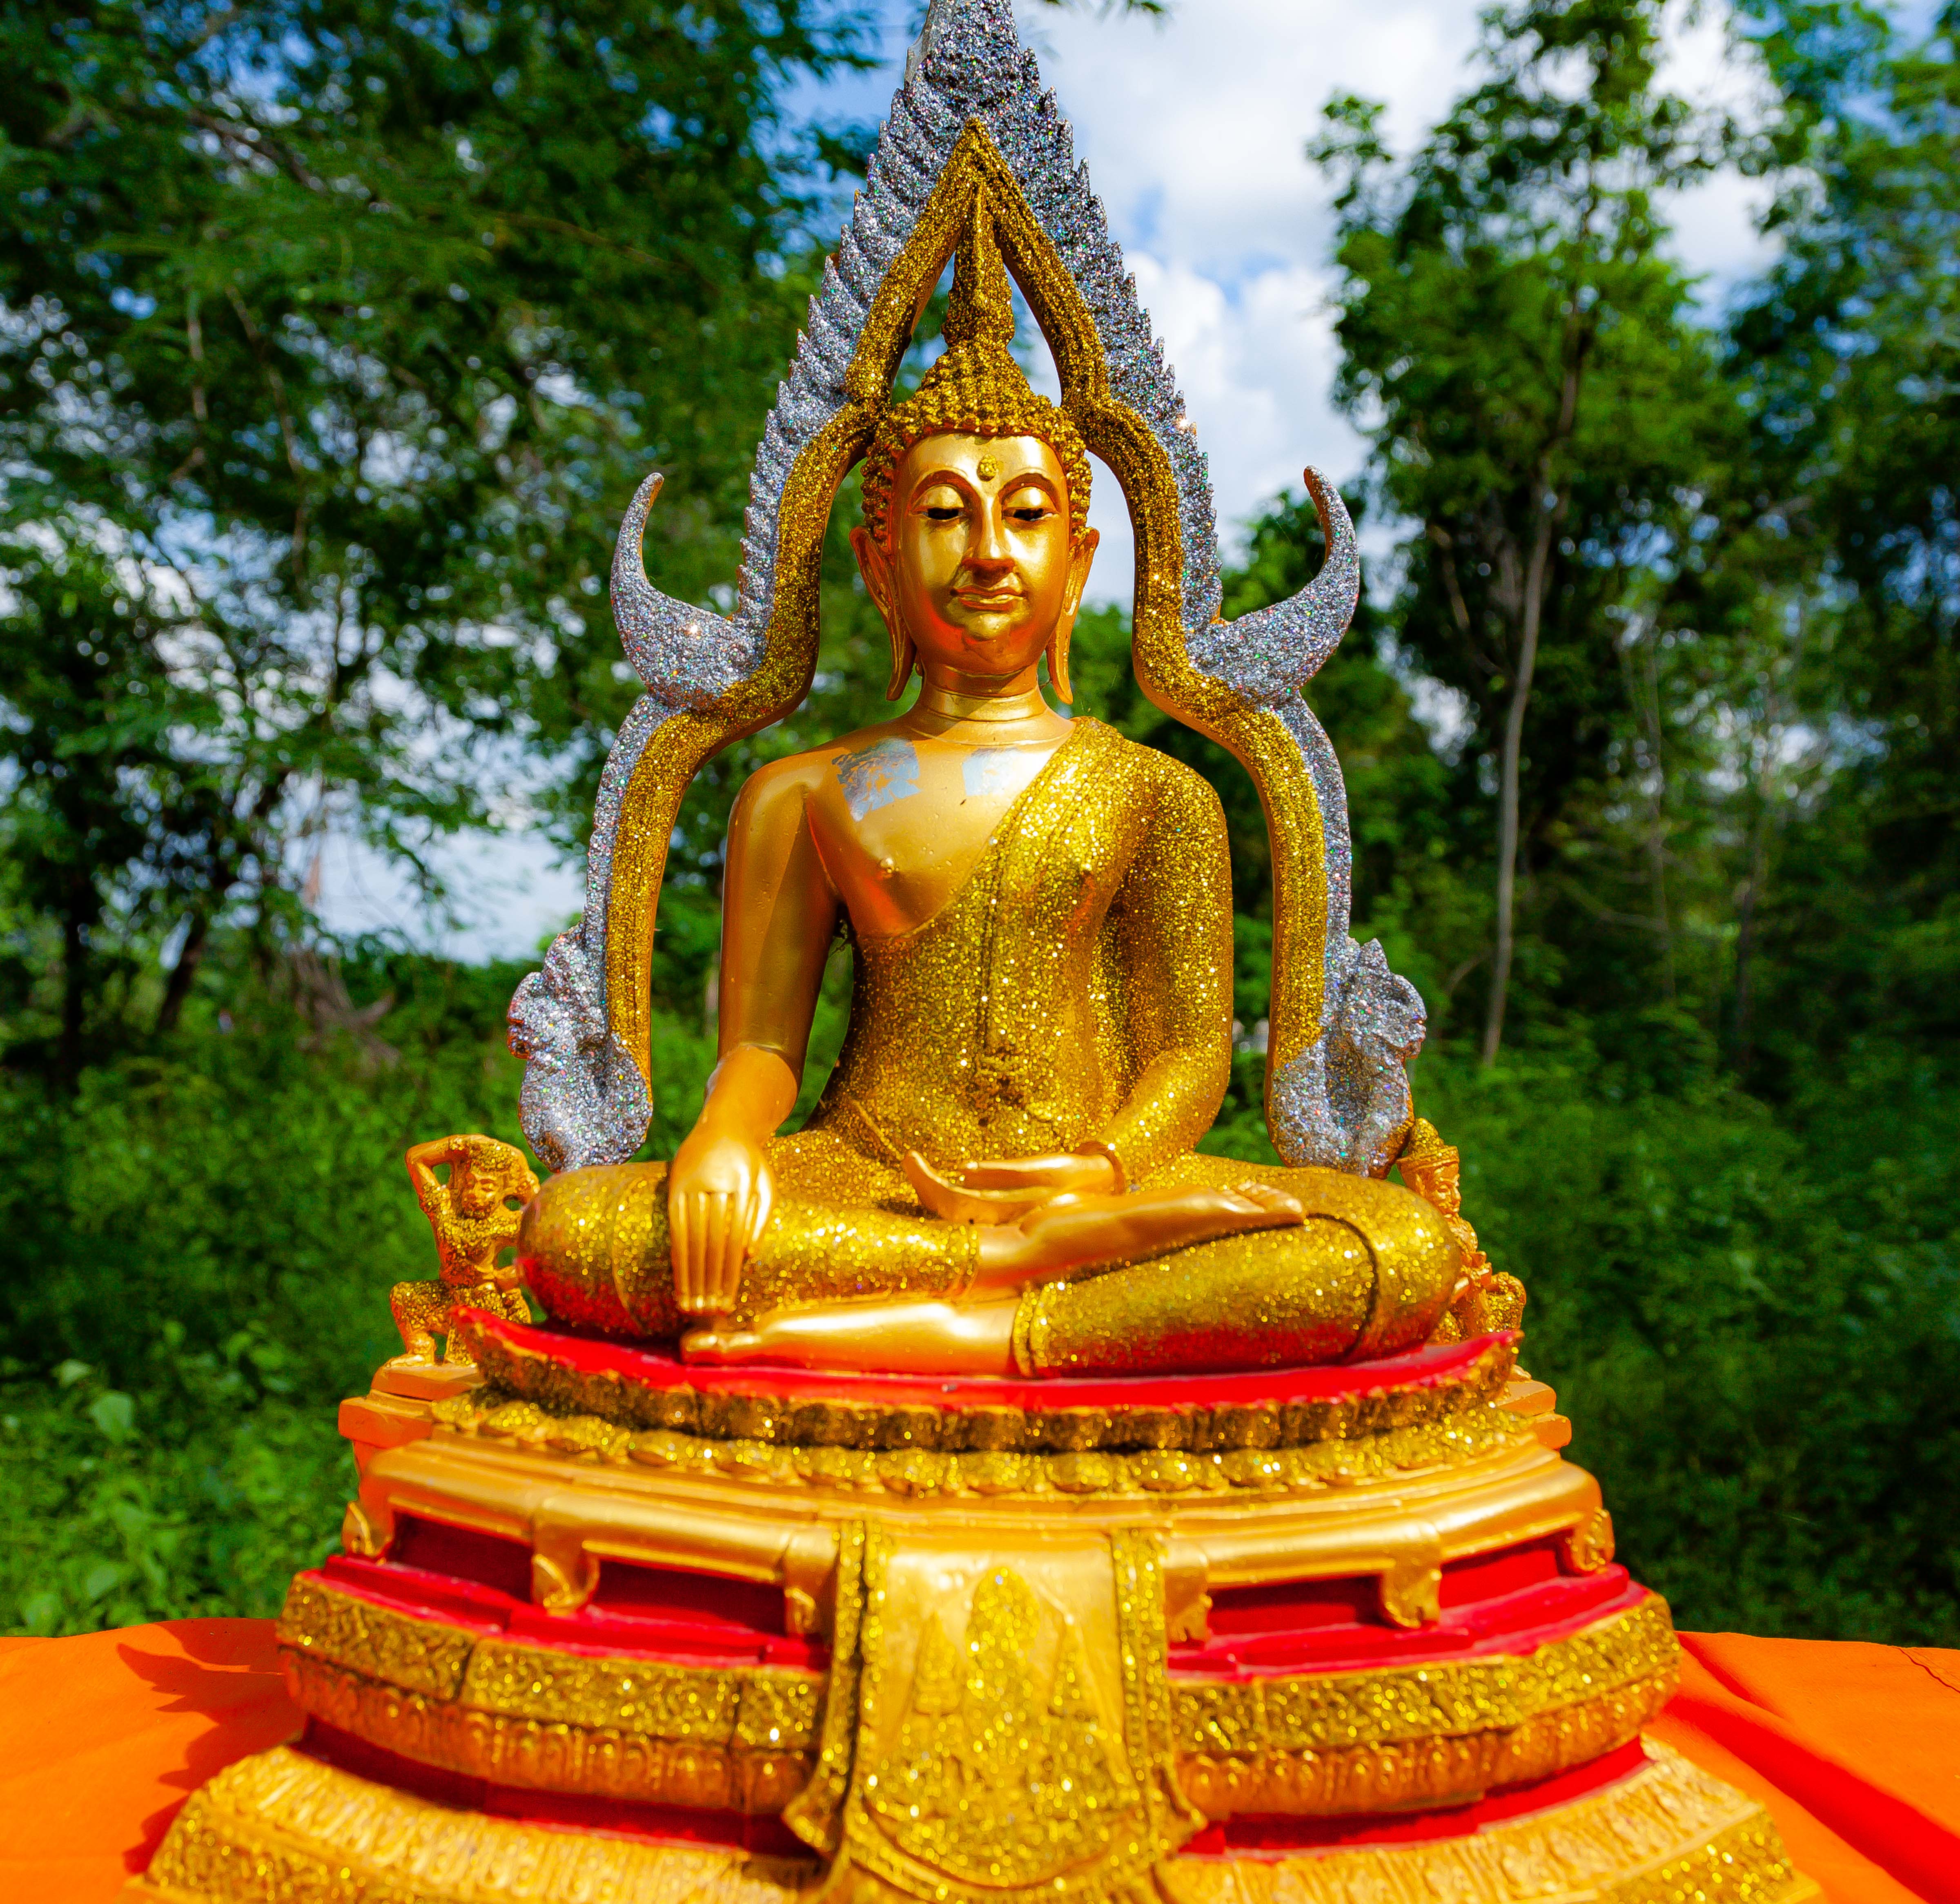 Thailand, Uttaradit Prov, Roadside Golden Buddha, 2008, IMG 4122